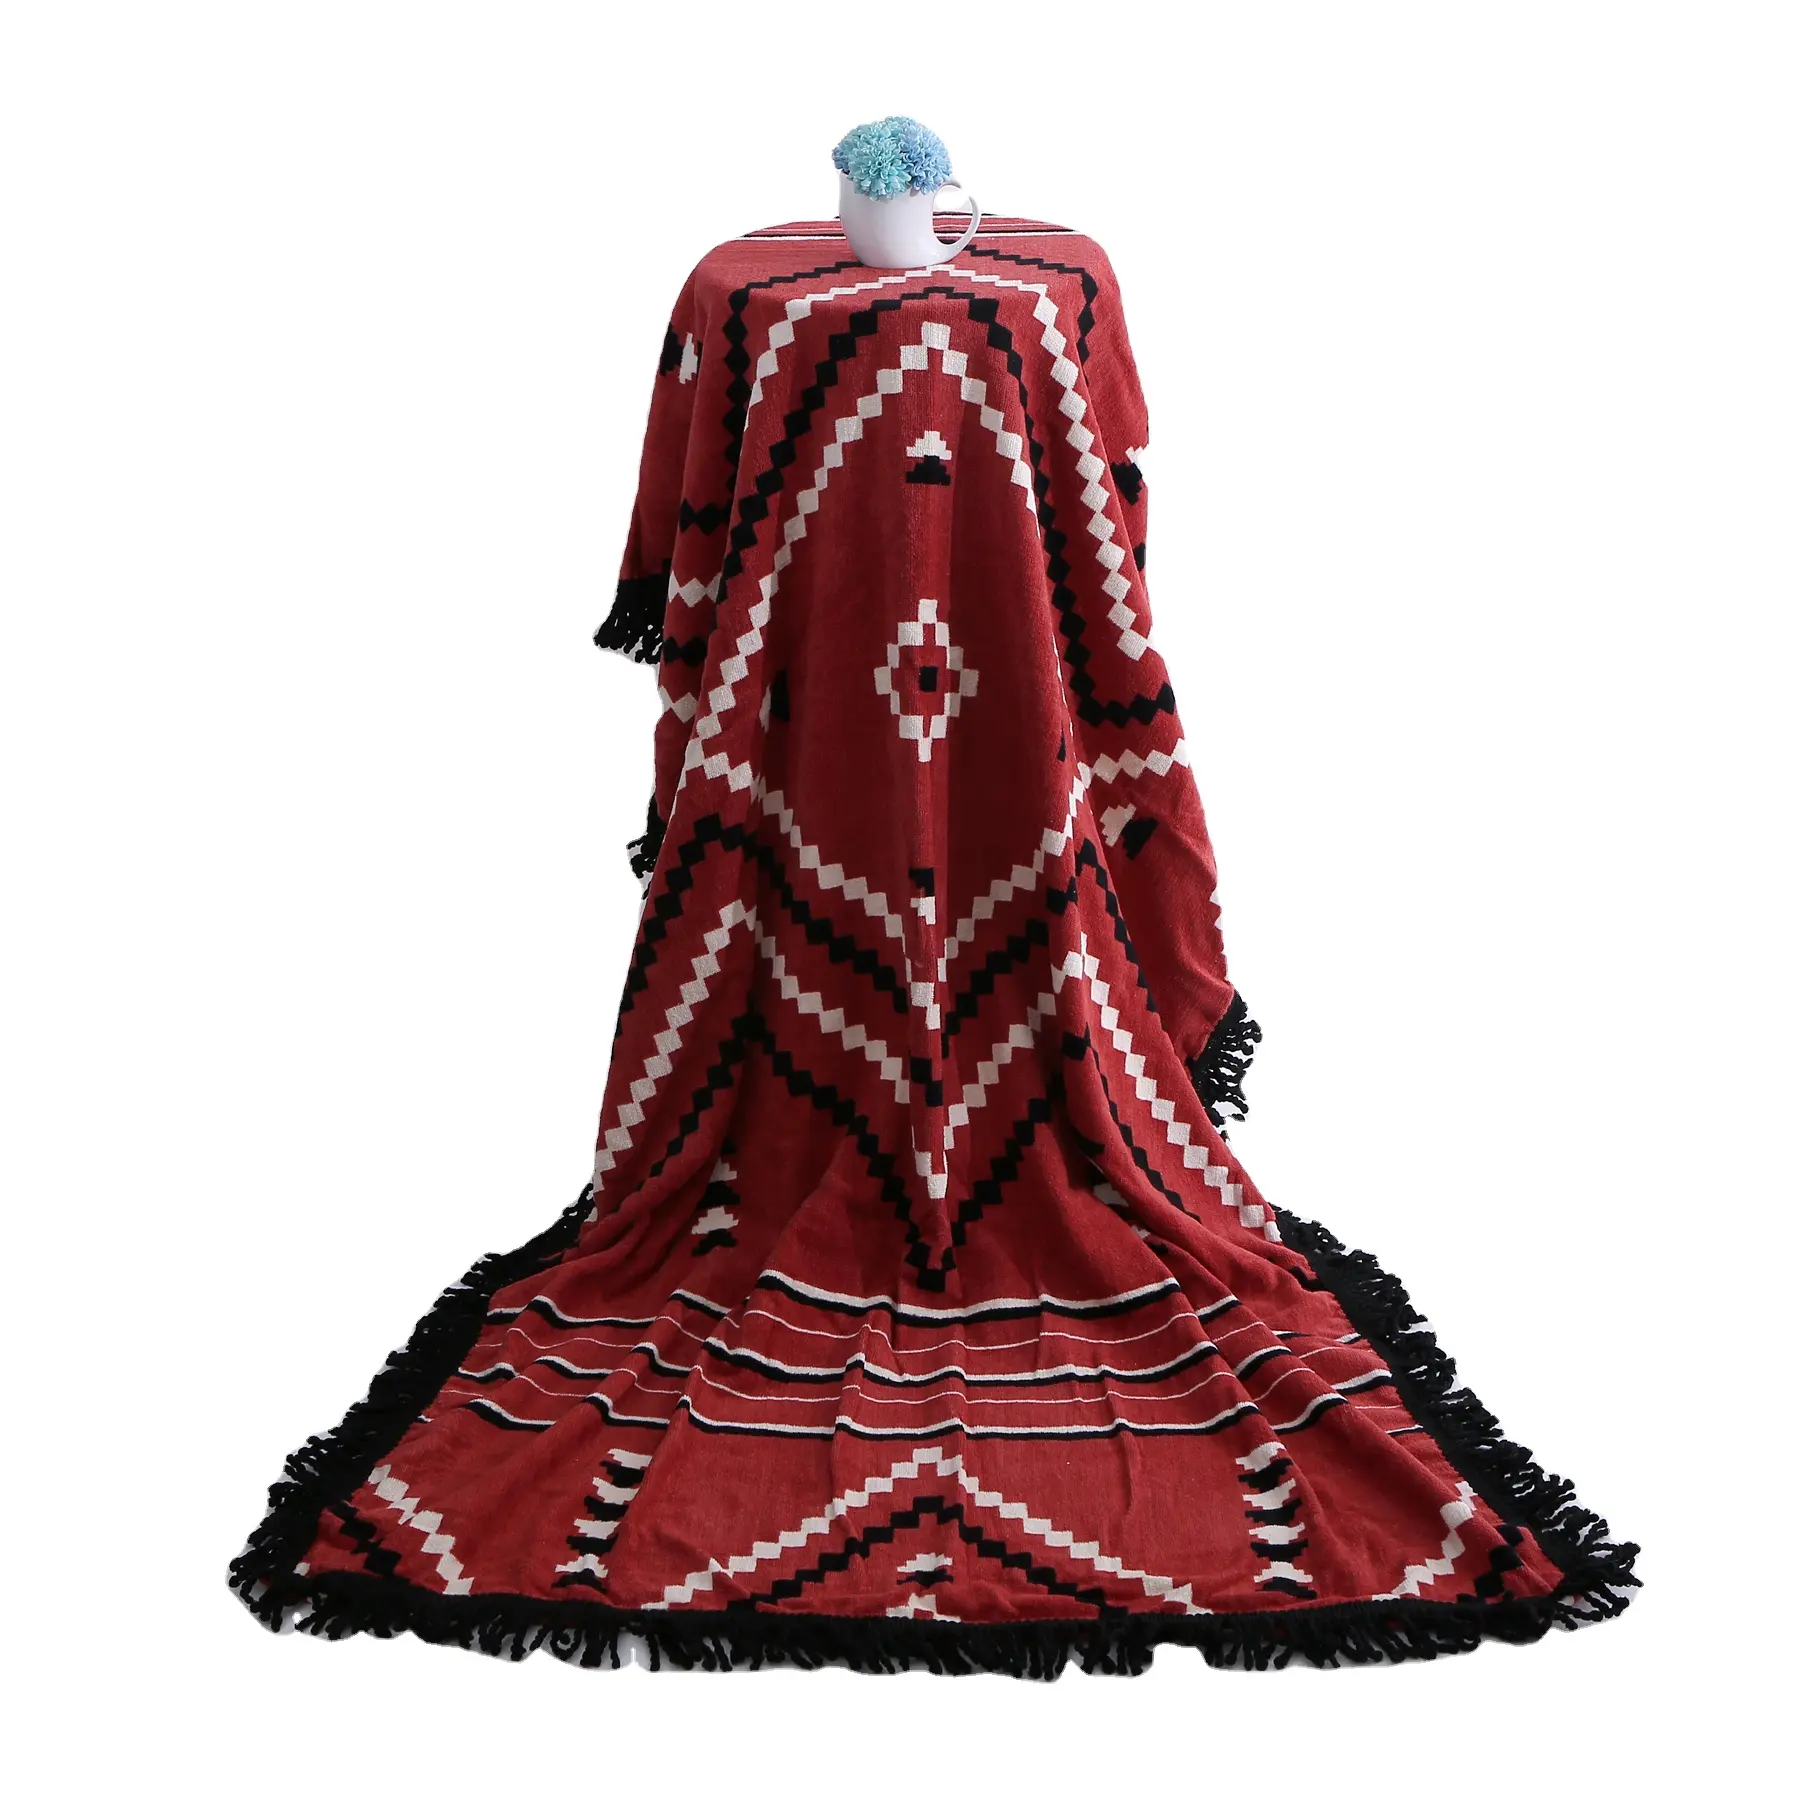 Hochwertiges rechteckiges rotes individuelles großes Szie Jacquard bedrucktes Taschentuch 100 % Baumwolle bad türkisches Strandtuch